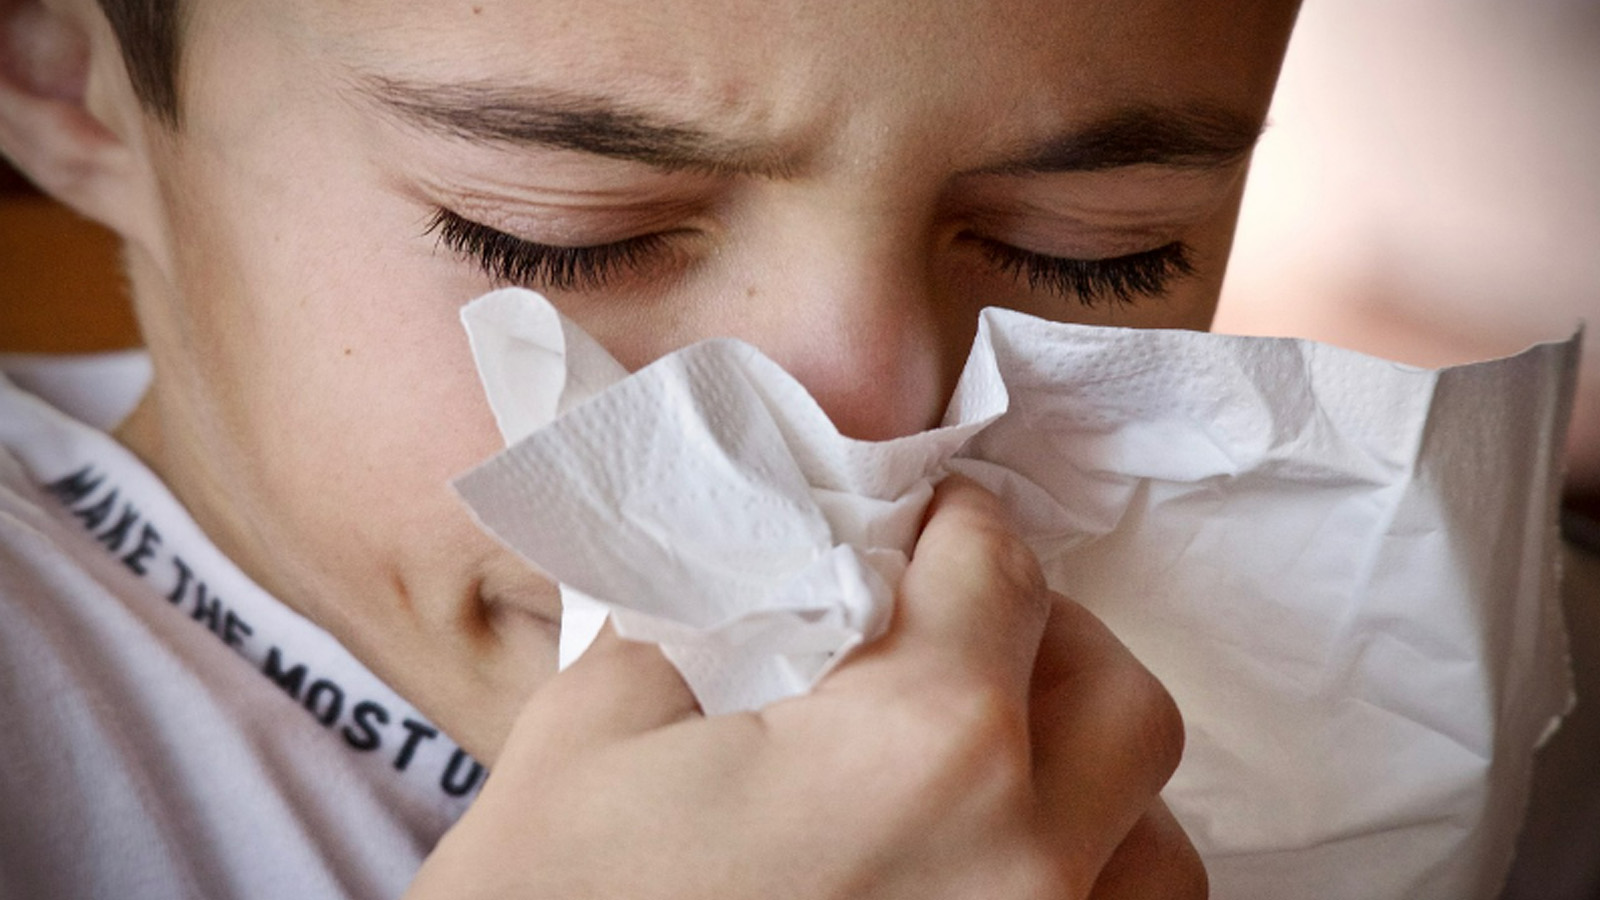 ما الذي يجعل الأمراض التنفسية أكثر حدّةً هذا العام؟